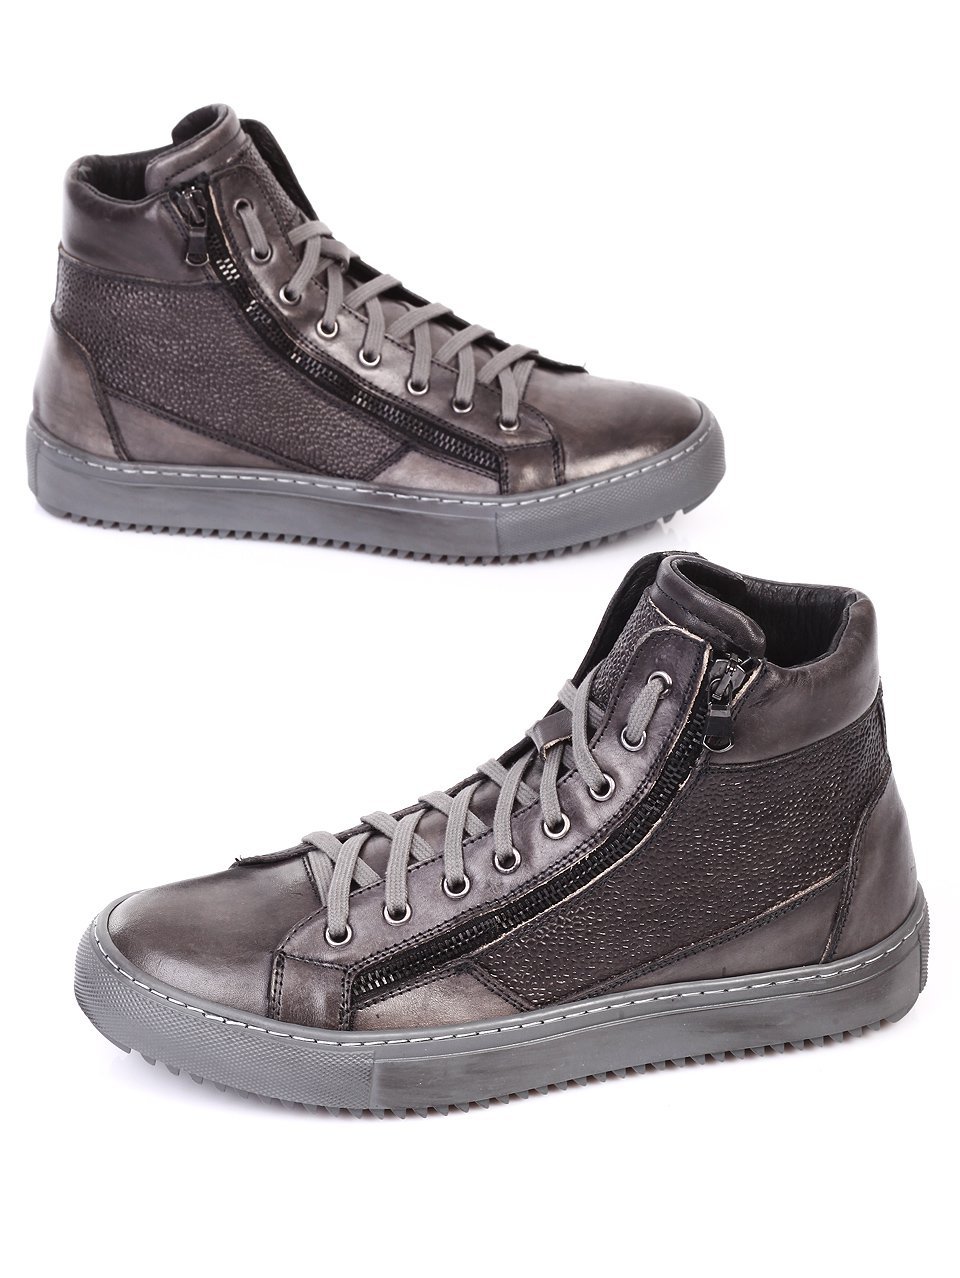 Ежедневни кецове обувки от естествена кожа 6AM-16807 grey